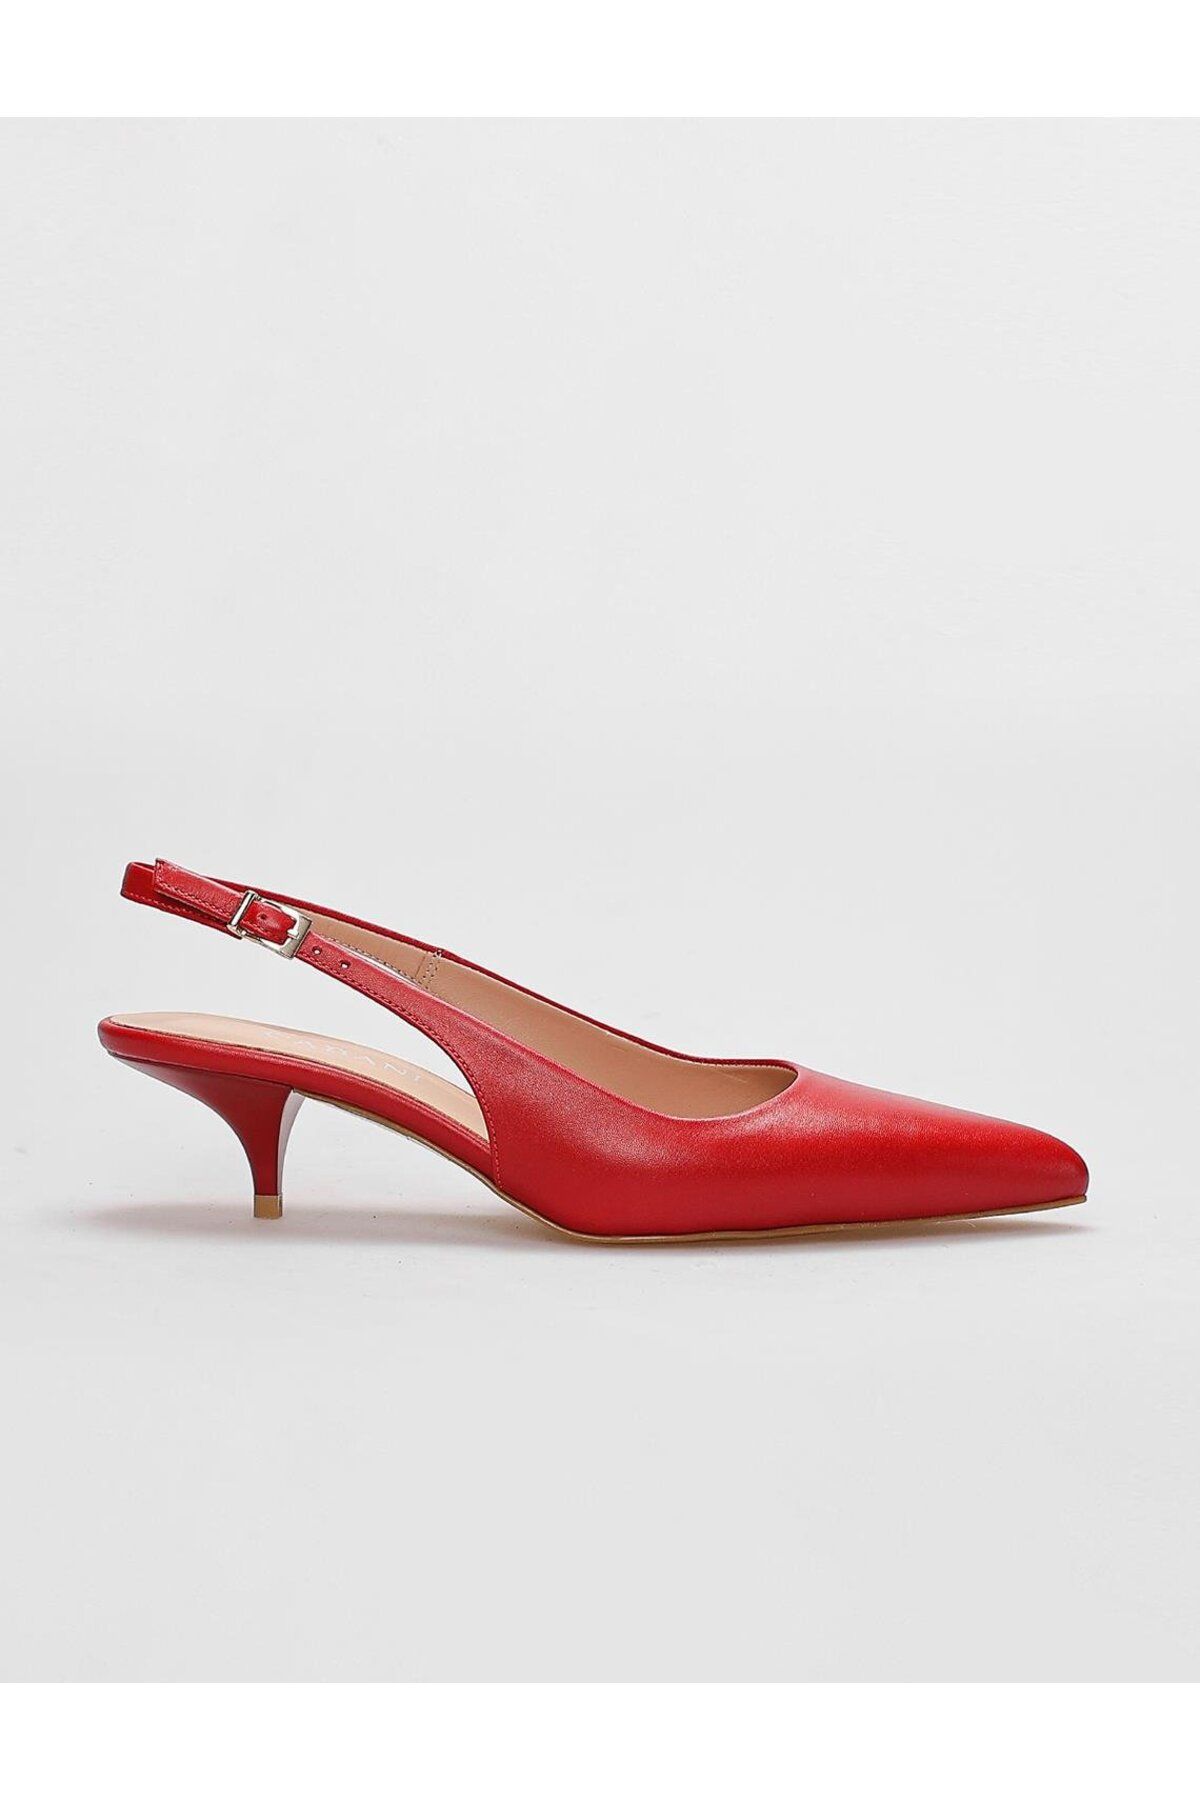 Cabani کفش های زن قرمز چرمی واقعی با پاشنه کوتاه